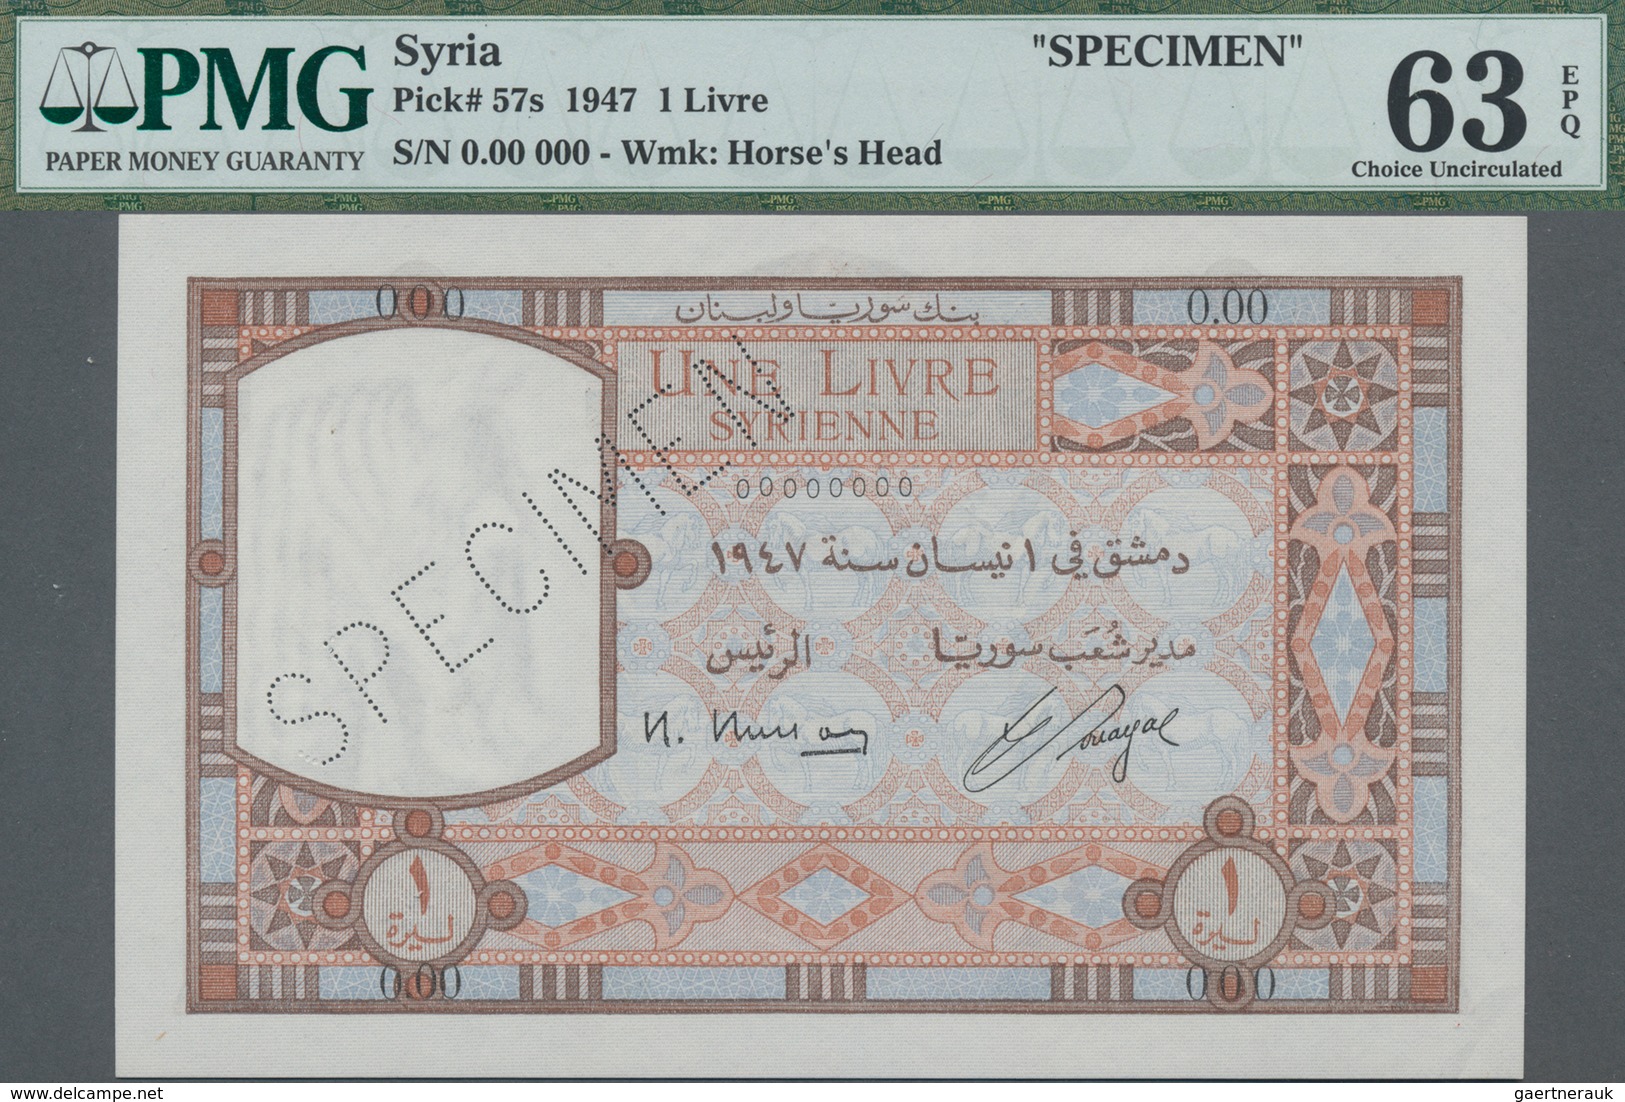 Syria / Syrien: Banque De Syrie Et Du Liban 1 Livre 1947 SPECIMEN, P.57s With Perforation "Specimen" - Syrien